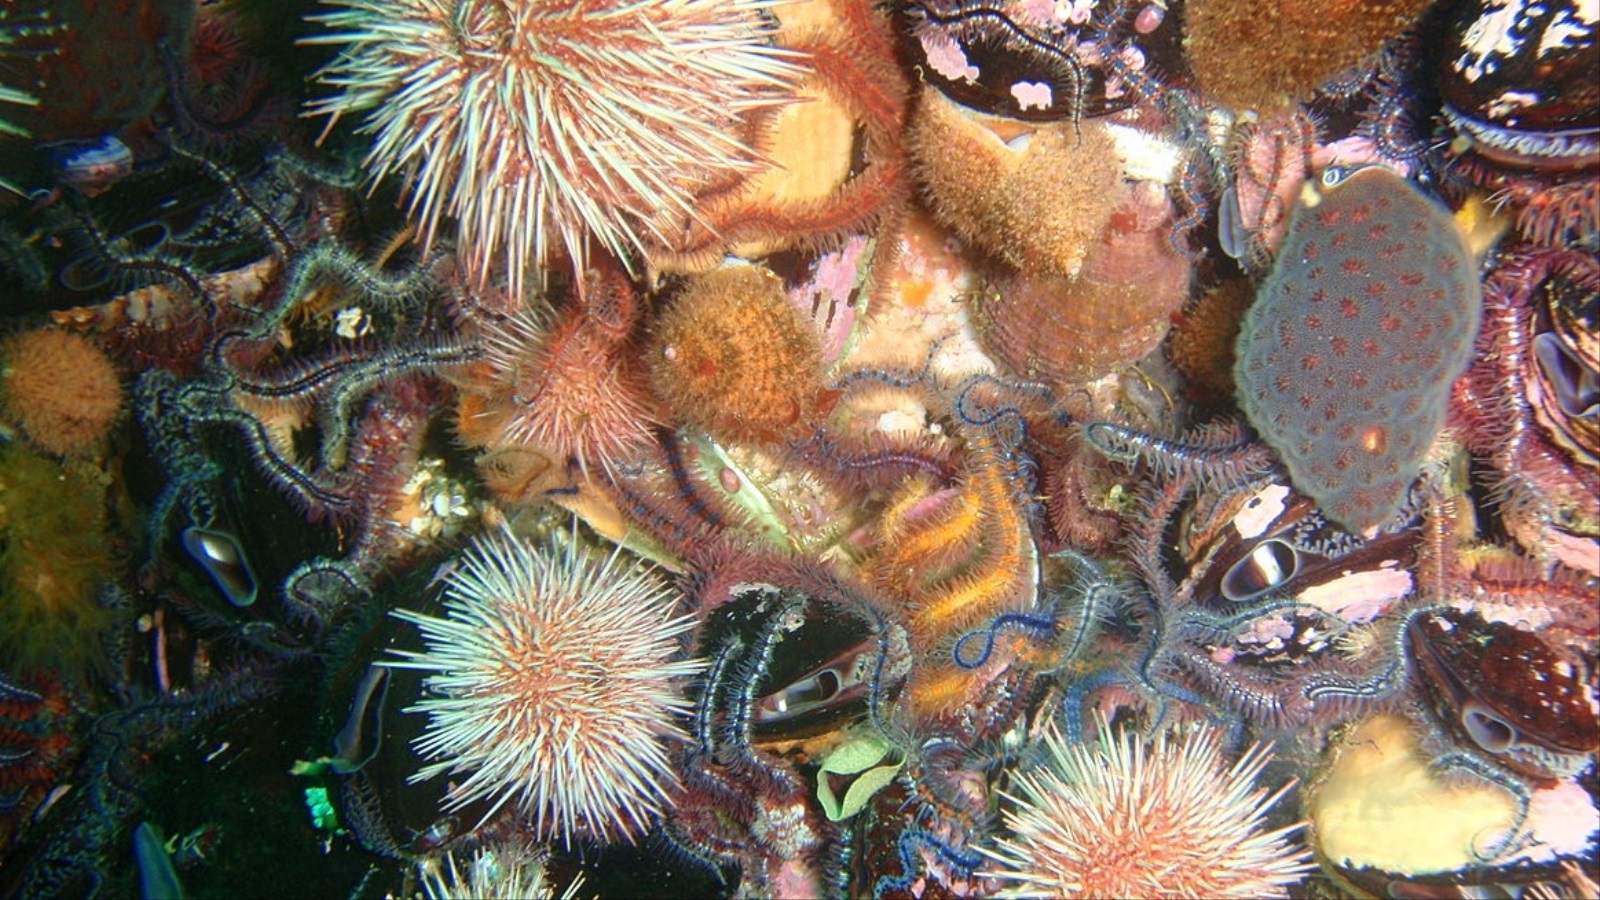 ‪نجم البحر الهش من الكائنات البحرية اللافقارية وينتمي إلى شعبة شوكيات الجلد (ويكيميديا كومونز)‬ نجم البحر الهش من الكائنات البحرية اللافقارية وينتمي إلى شعبة شوكيات الجلد (ويكيميديا كومونز)